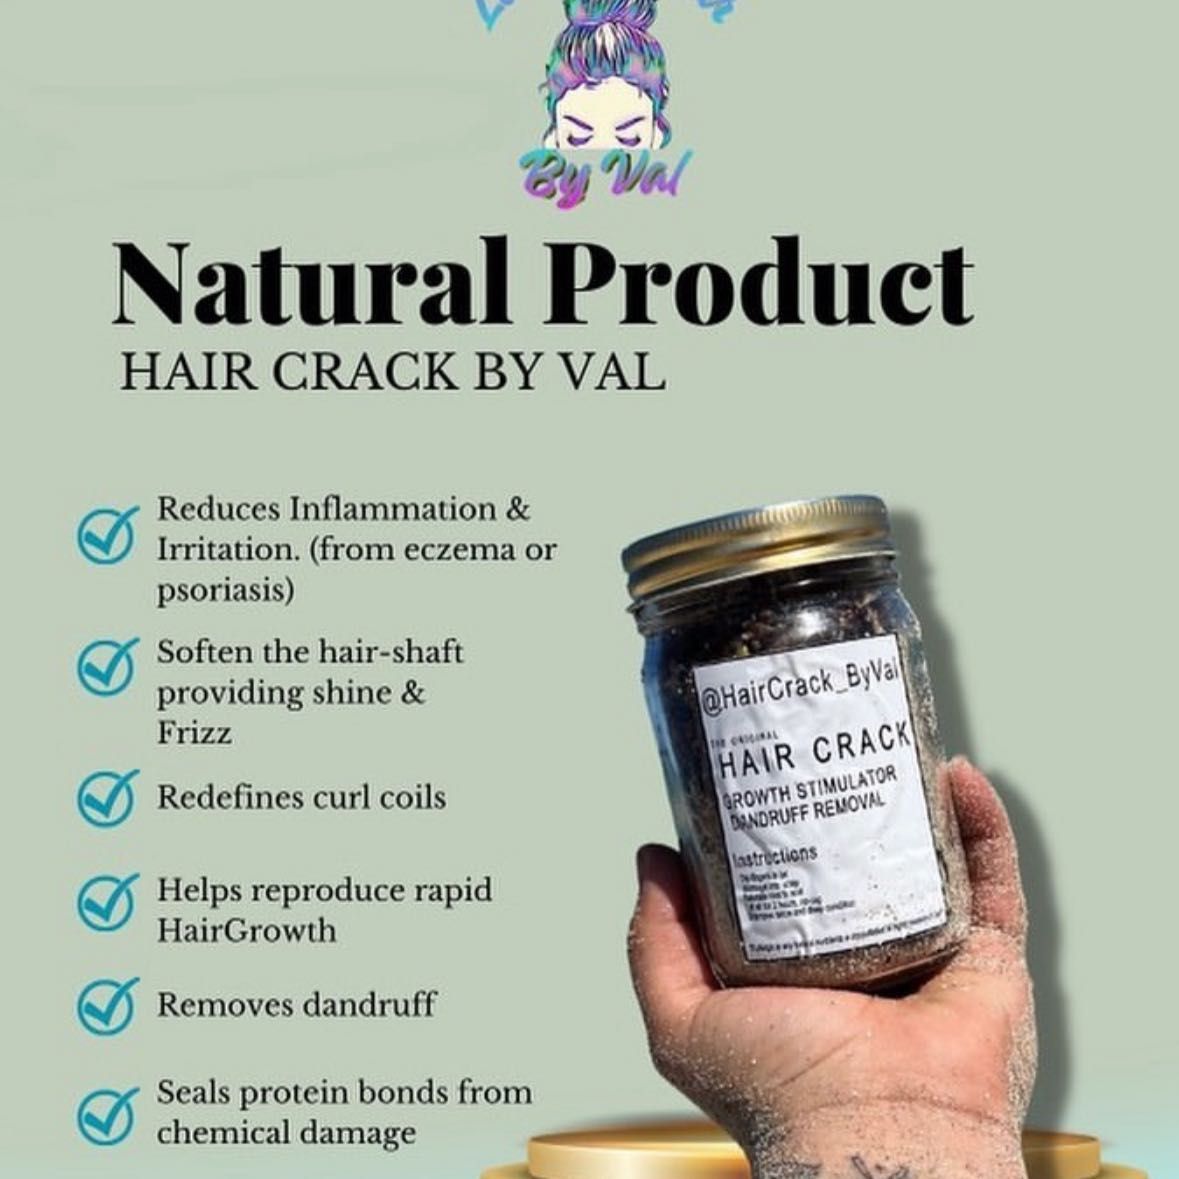 Val’s Hair Crack portfolio